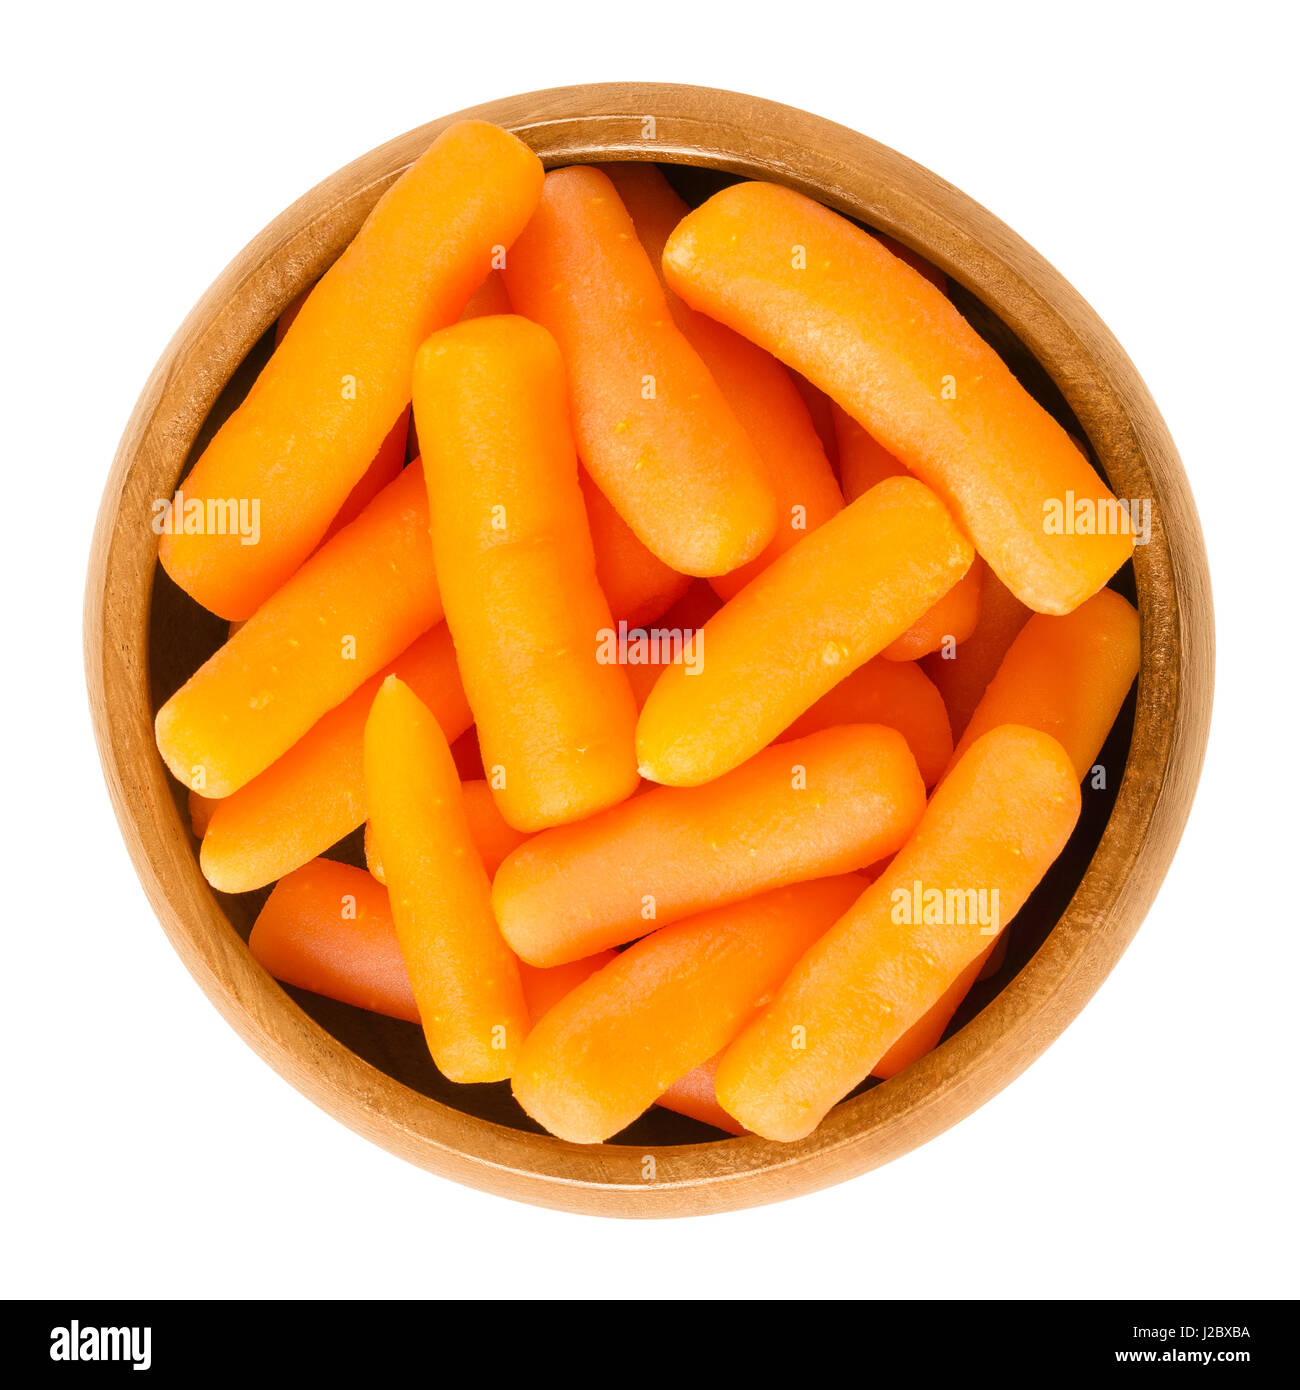 Baby-Karotten in Holzschale. Klein dimensionierte und unreife Karotten gekocht. Wurzelgemüse mit orange Farbe. Daucus Carota. Isolierte Makrofoto. Stockfoto